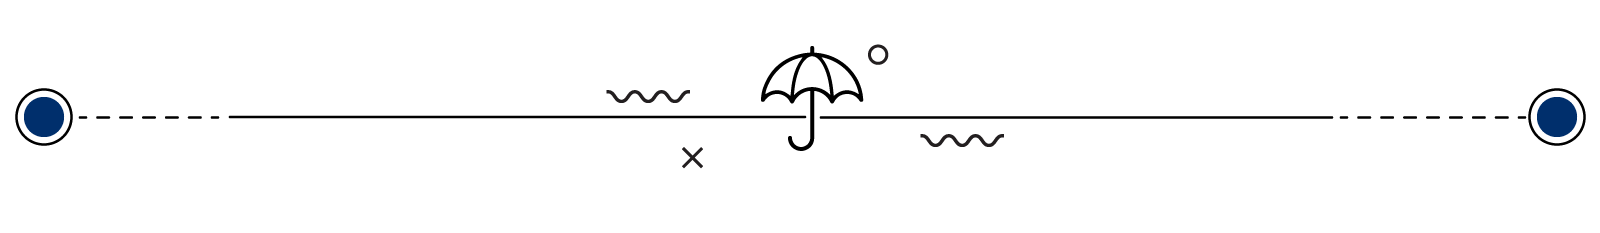 umbrella paragraph separator